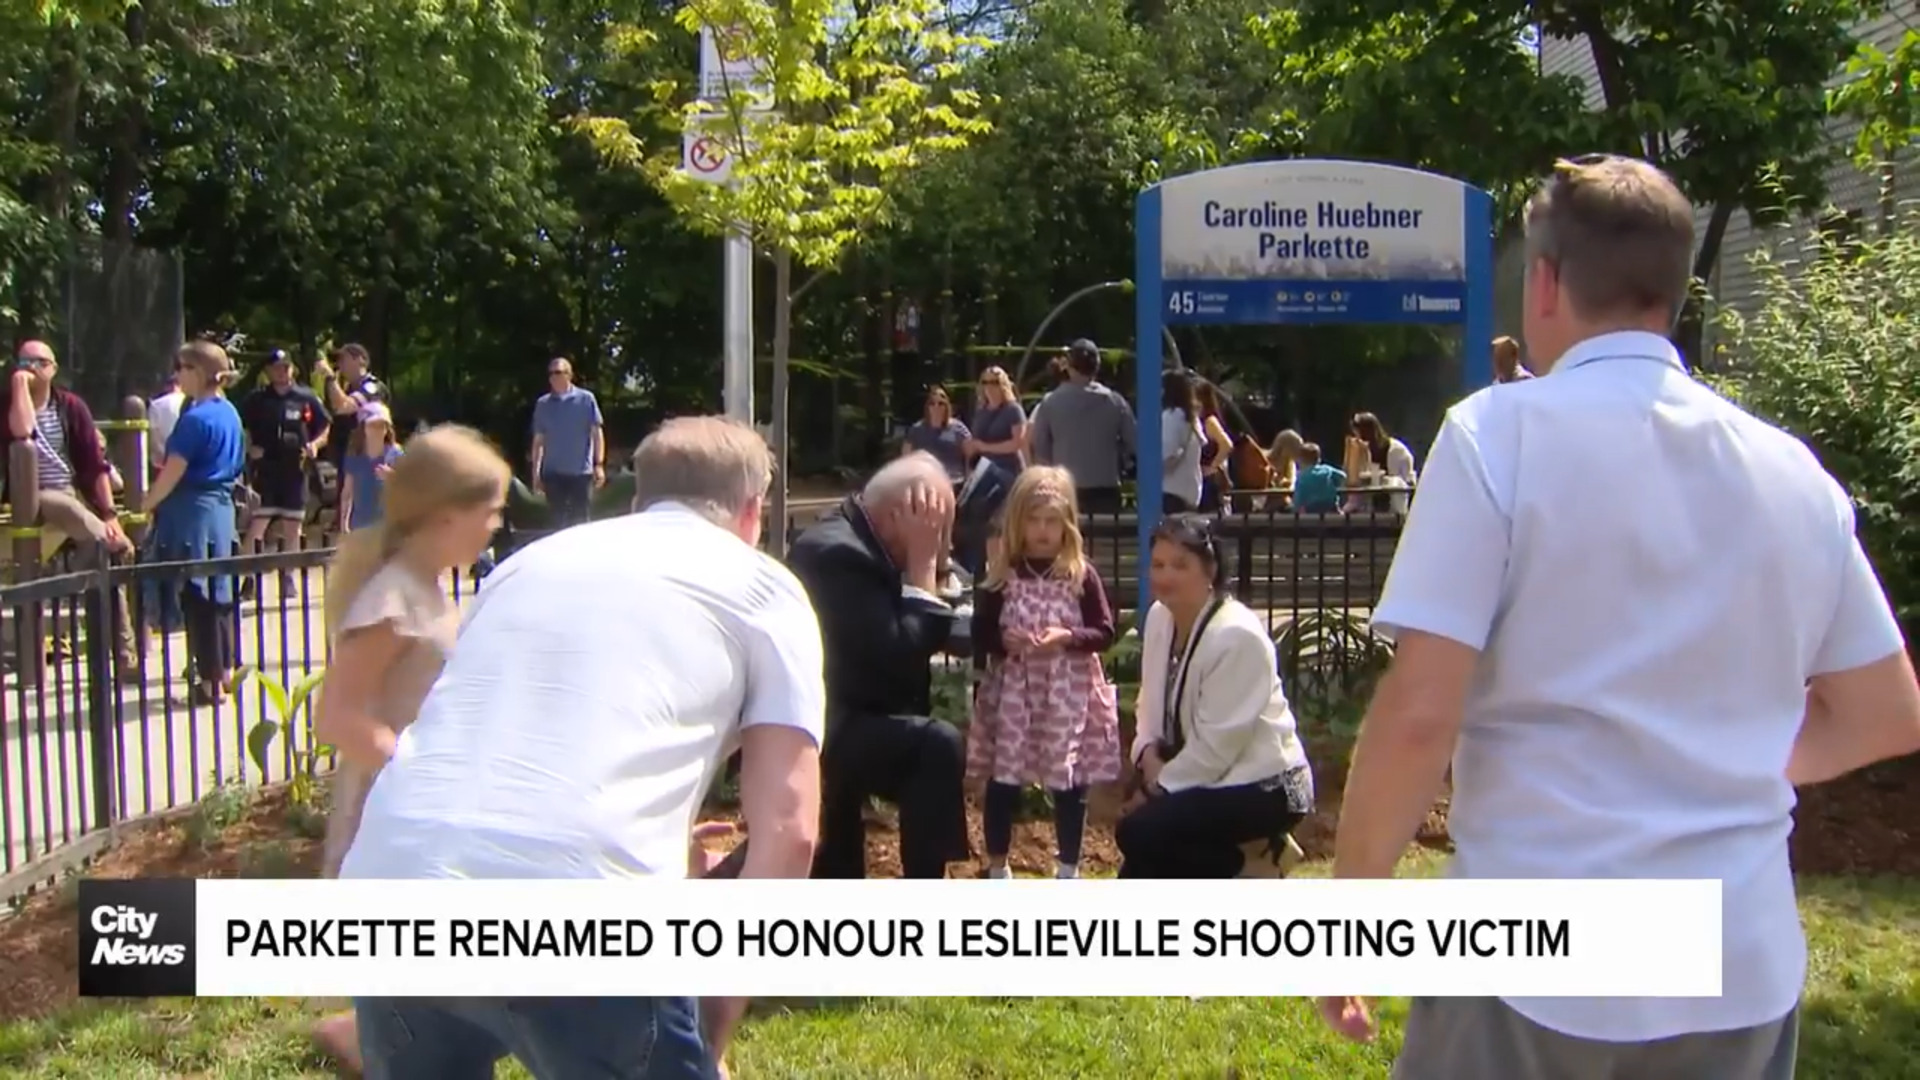 Parkette renamed to honour Leslieville shooting victim